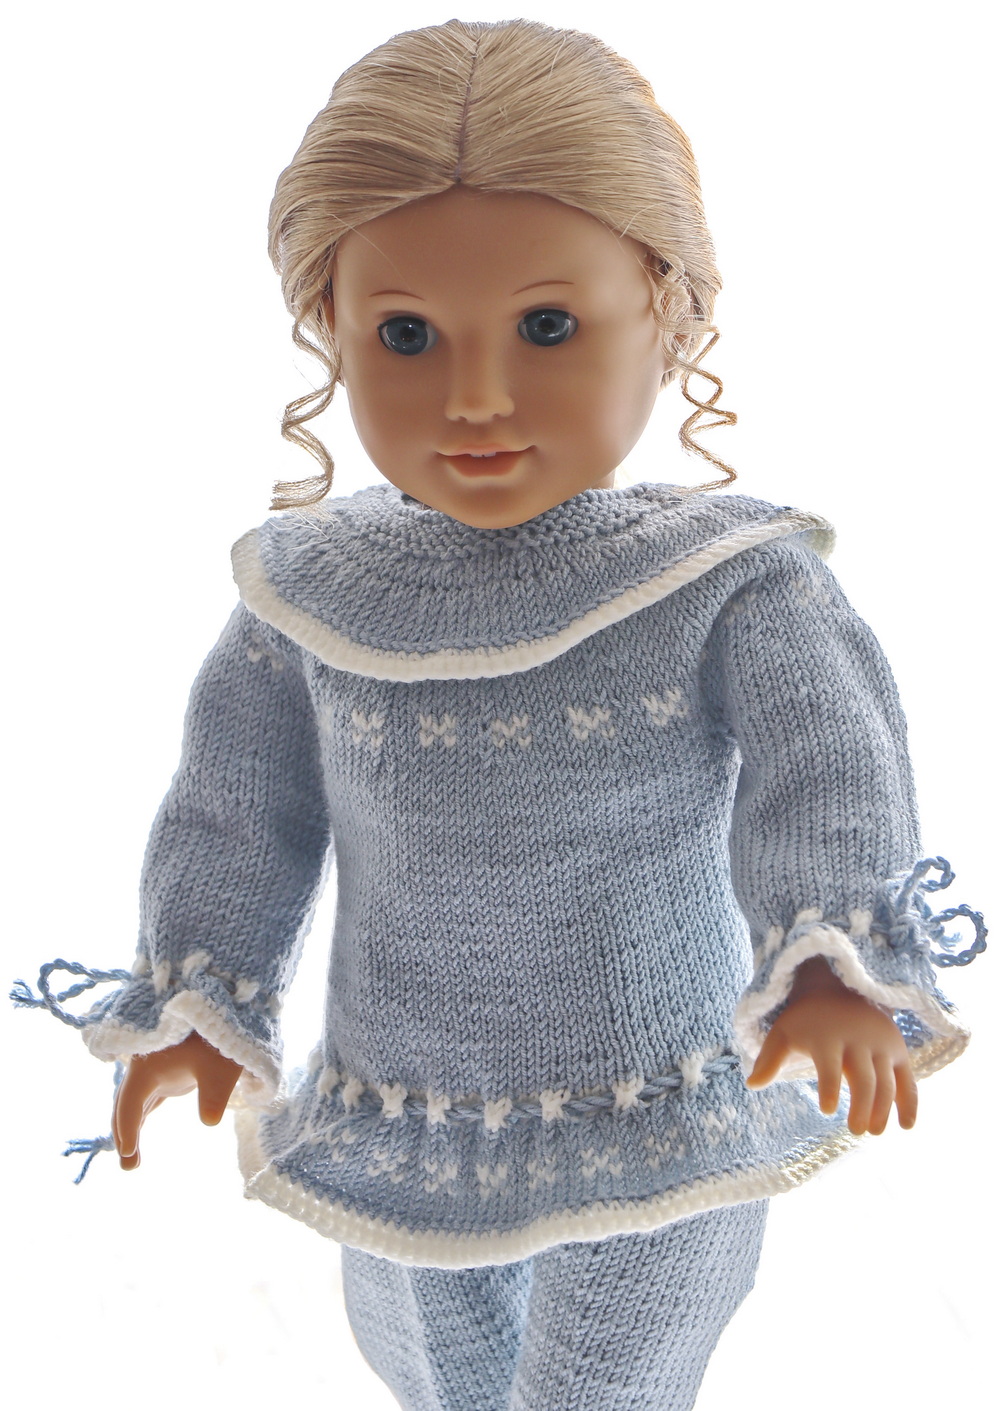 0232d-18-knitting-patterns-for-american-girl-dolls-newsletter.jpg